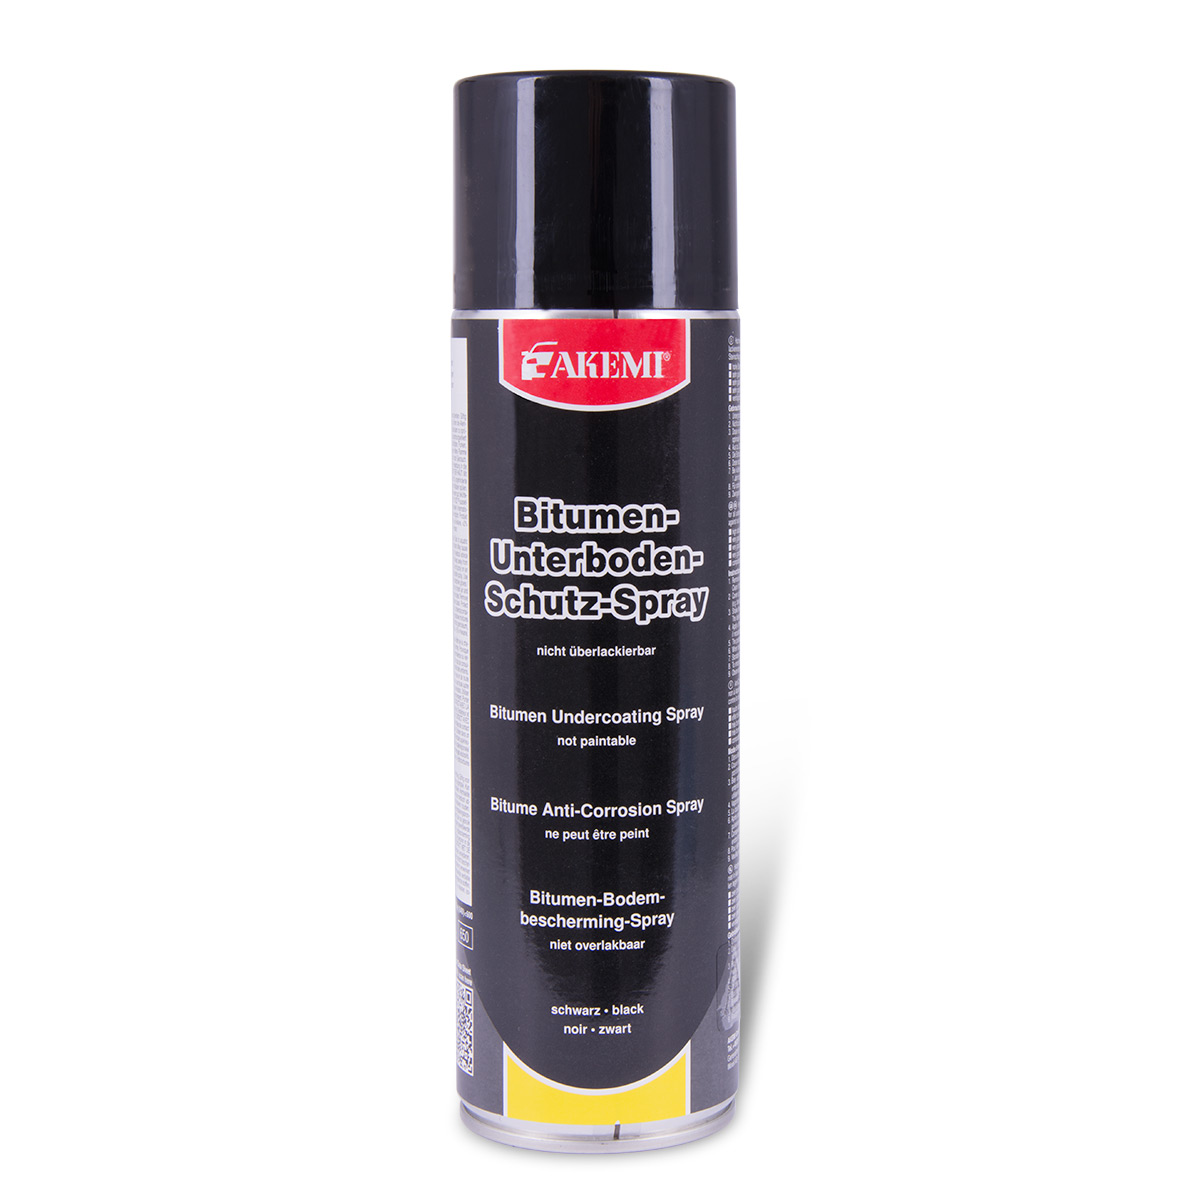 AKEMI Bitumen Unterbodenschutz-Spray, schwarz, 500ml